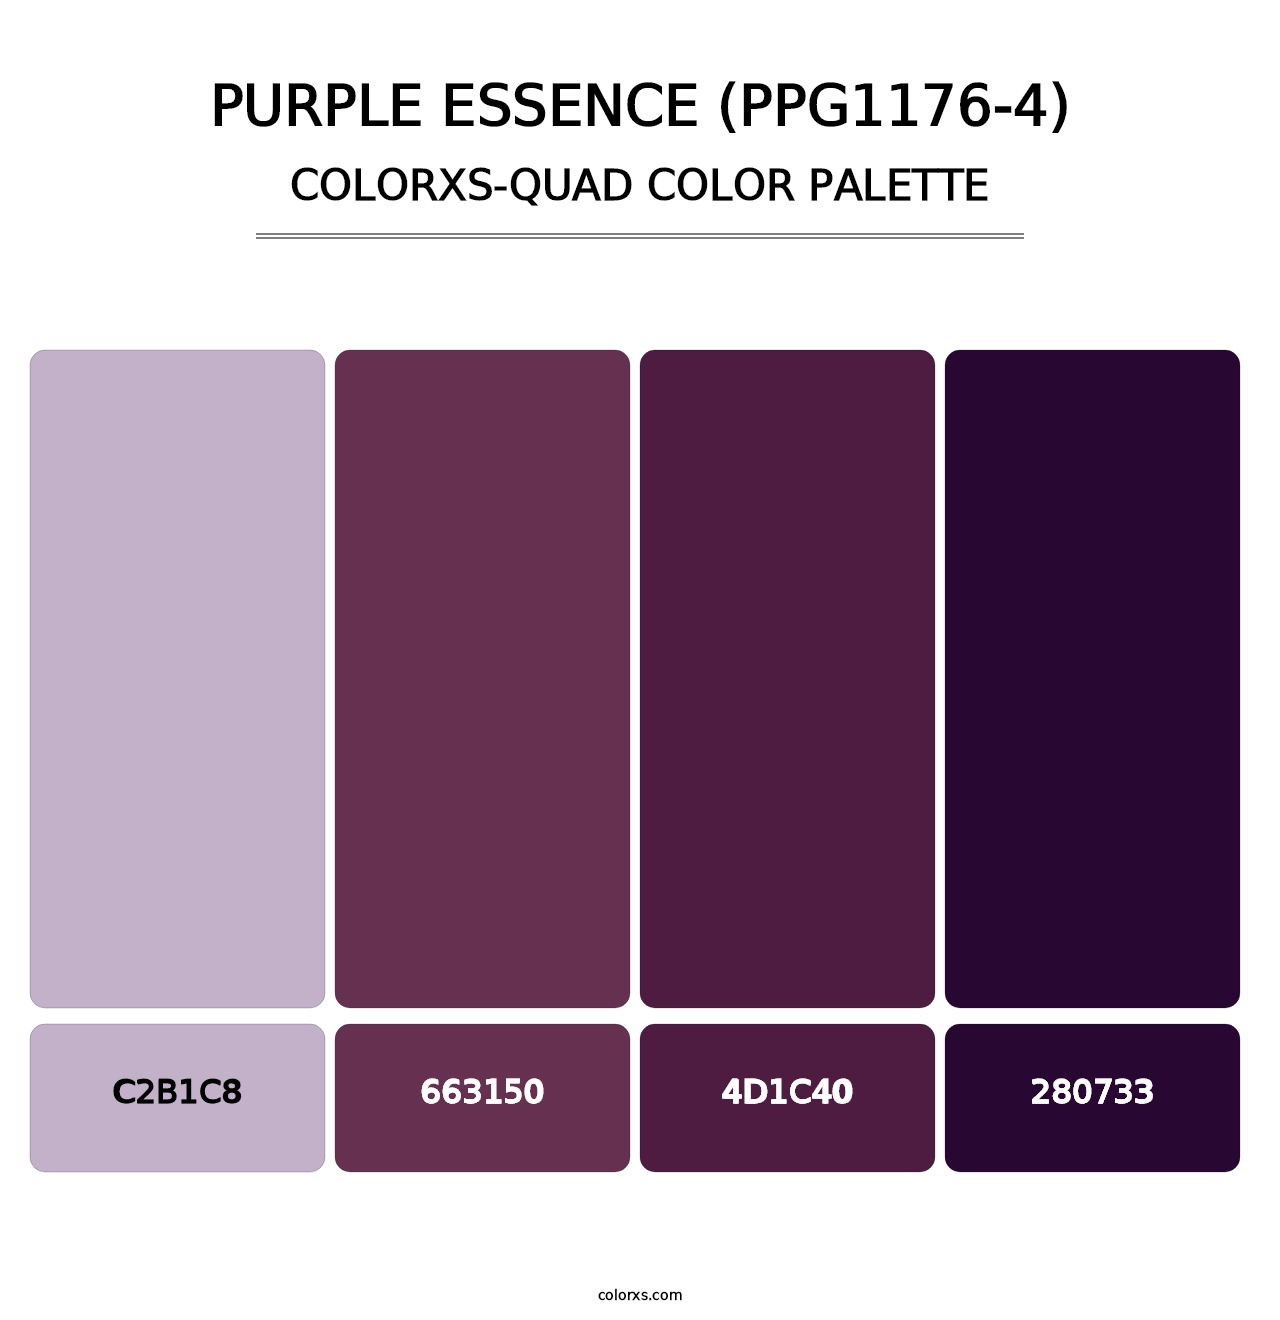 Purple Essence (PPG1176-4) - Colorxs Quad Palette